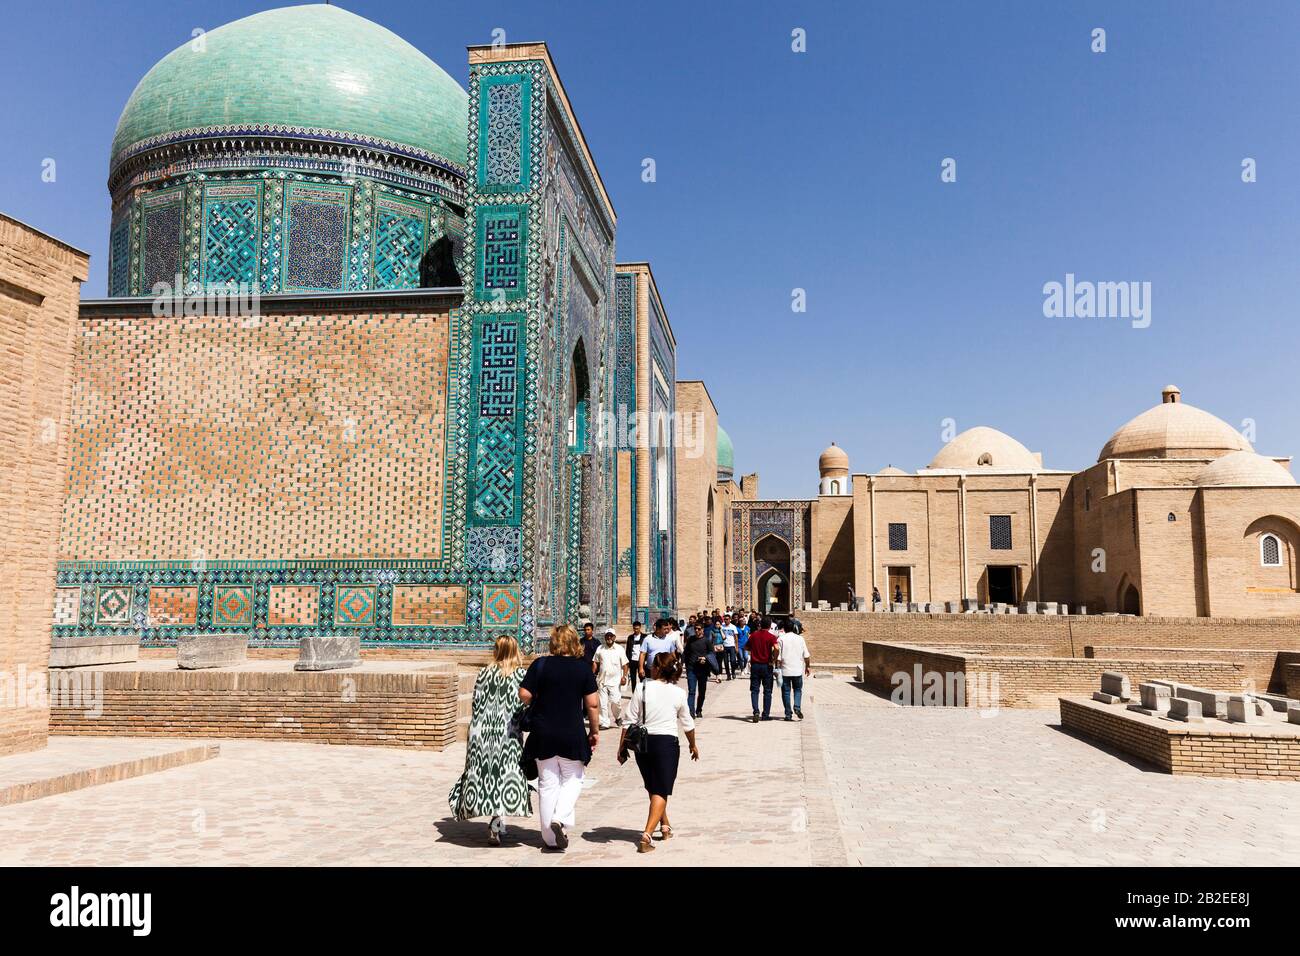 Shah-i-Zinda necropolis, Shahi Zinda Tombs, Samarkand, Uzbekistan, Central Asia, Asia Stock Photo